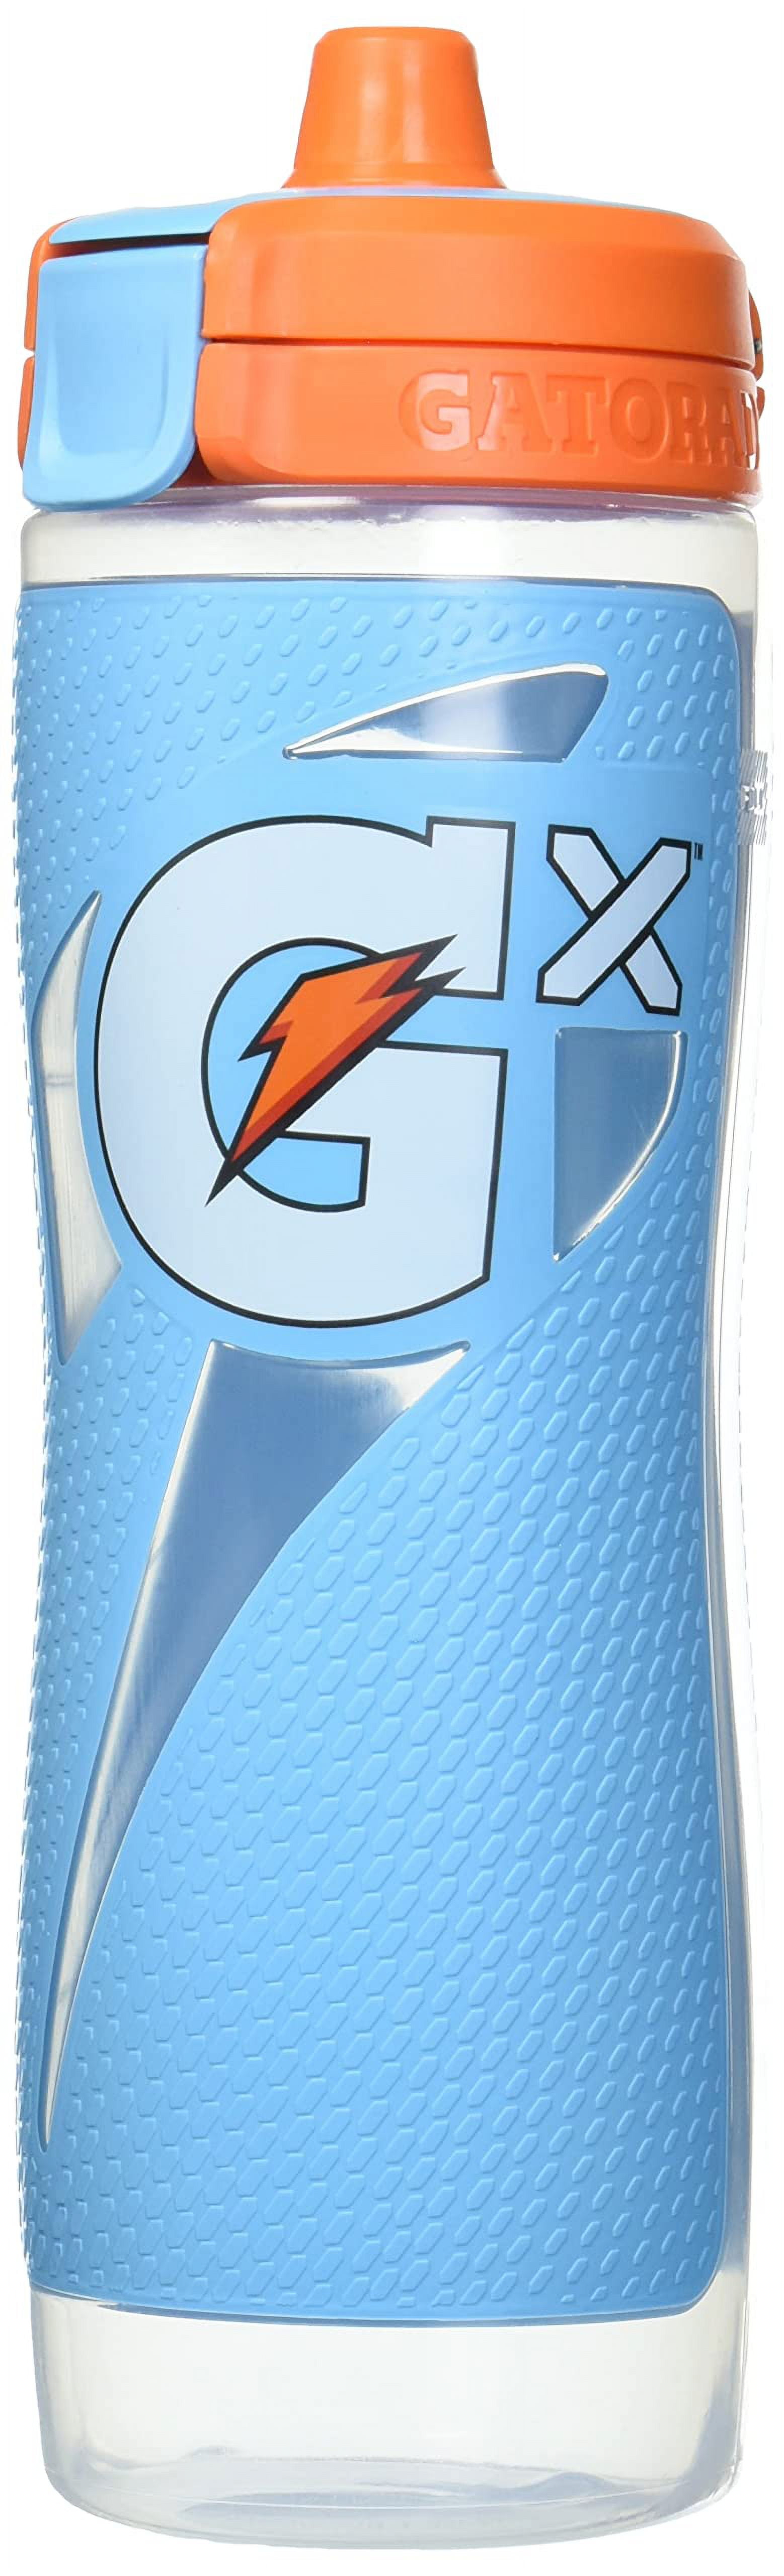 Gatorade GX 30 oz. Bottle, Navy